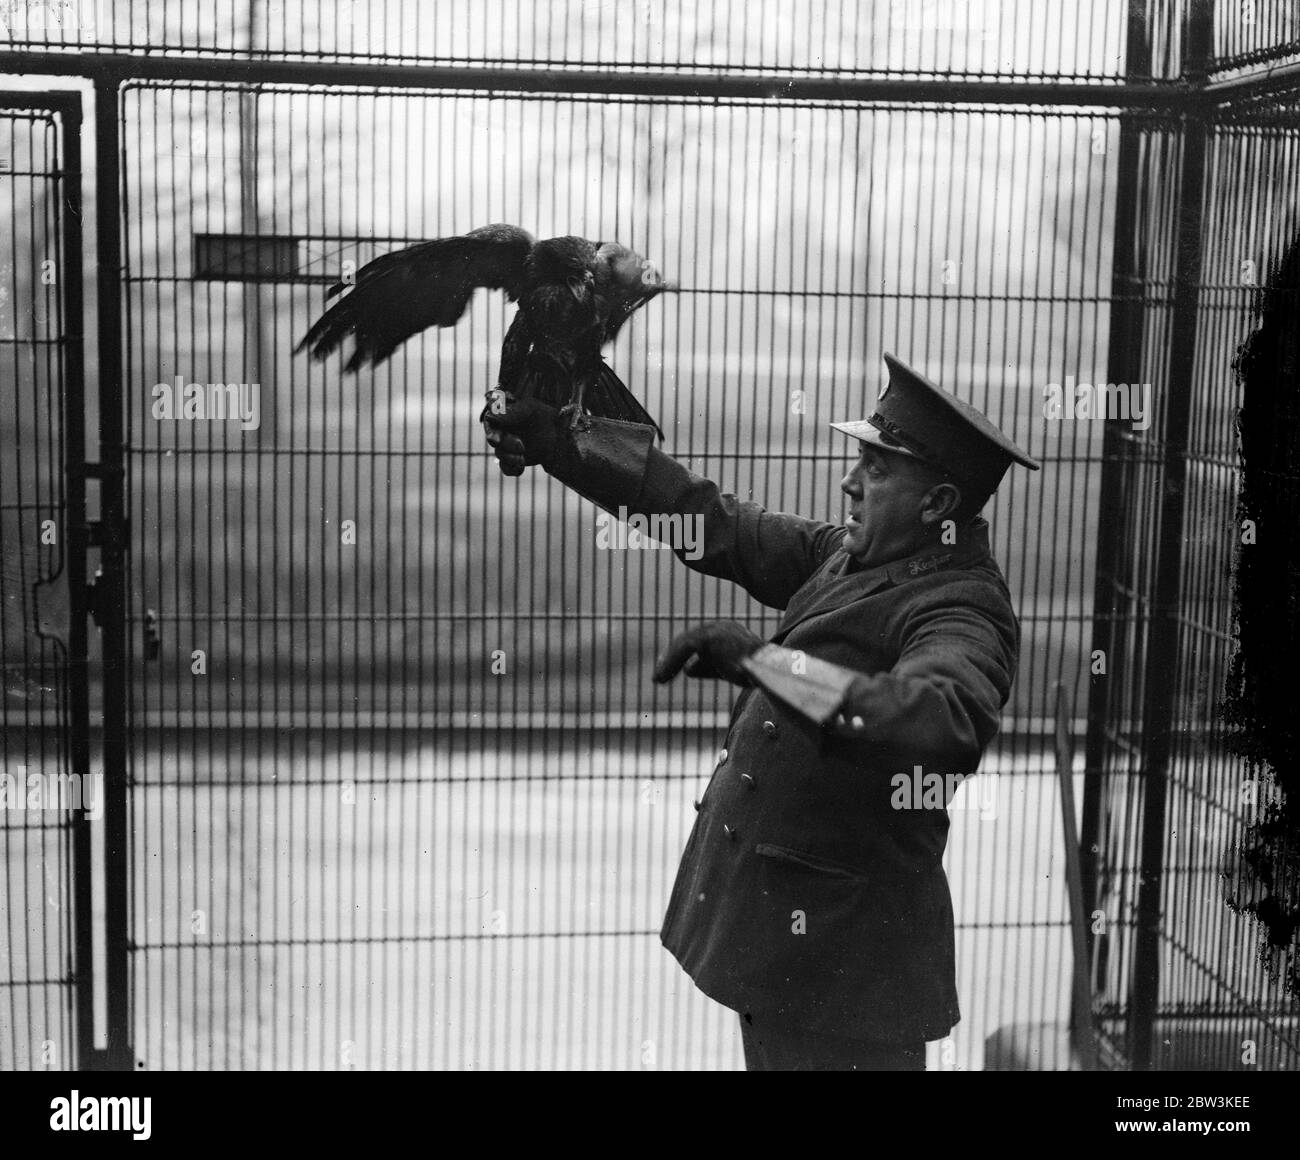 Pedro ist nach einer Woche Freiheit wieder in seinem Tiergehege. Pedro, der Truant, ist zurück in seinem Käfig im Londoner Zoo. Pedro ist ein gestürzter Adler, der den Zoo Behörden schlaflose Nächte für eine Woche gab, nachdem er es geschafft hatte zu entkommen. Er nahm Quartier in den Bäumen des Zoos und widersetzte sich jeder Schmeichelkeit, auf die ein hungriger Adler zu erwarten wäre, zu reagieren, Bis er bemerkte, ein Holz-Schweinchen, das in die Krananlage getaucht hatte. Henne pedro verlor seine Selbstkontrolle und flog zum Kill nur sicher in einem Keeper ' s net gefangen werden. Foto zeigt, Pedro sicher zurück in seinem Käfig im London Zoo. Judgin Stockfoto